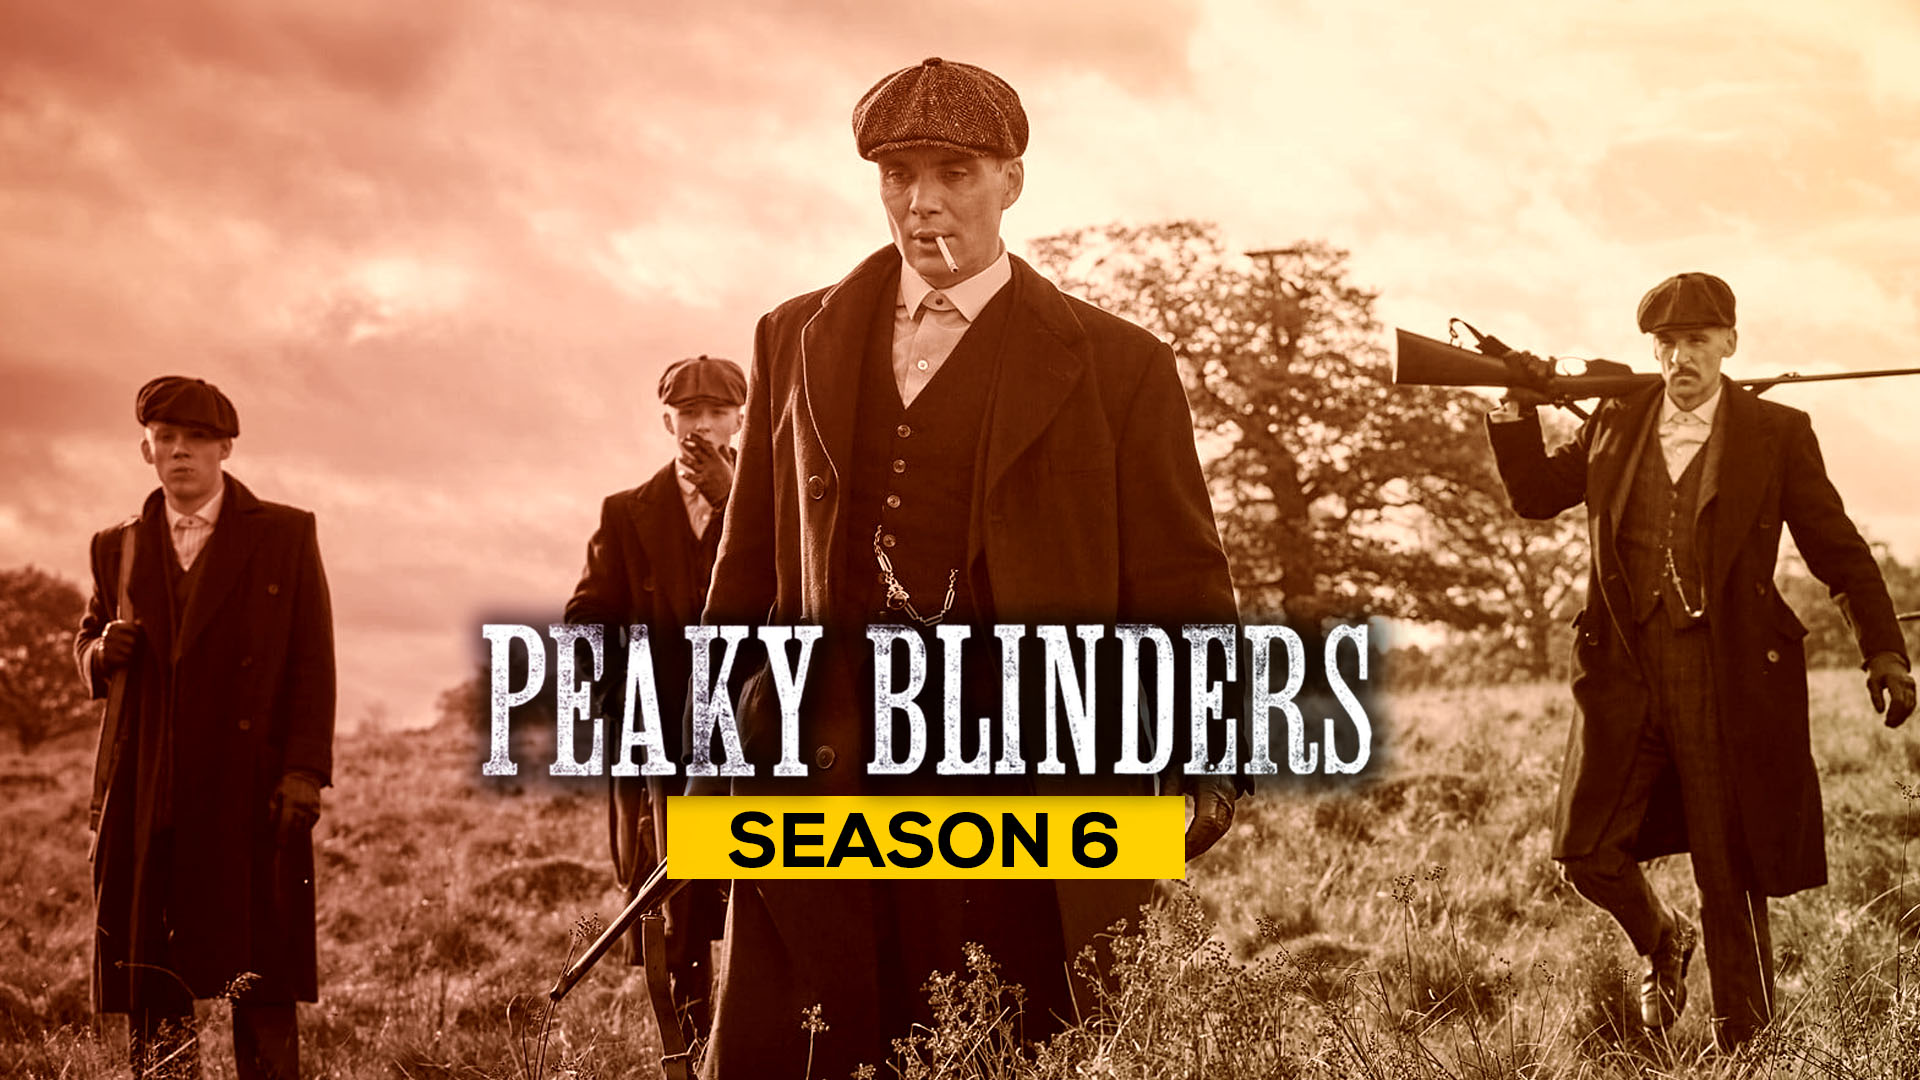 Peaky blinders season 6 release date